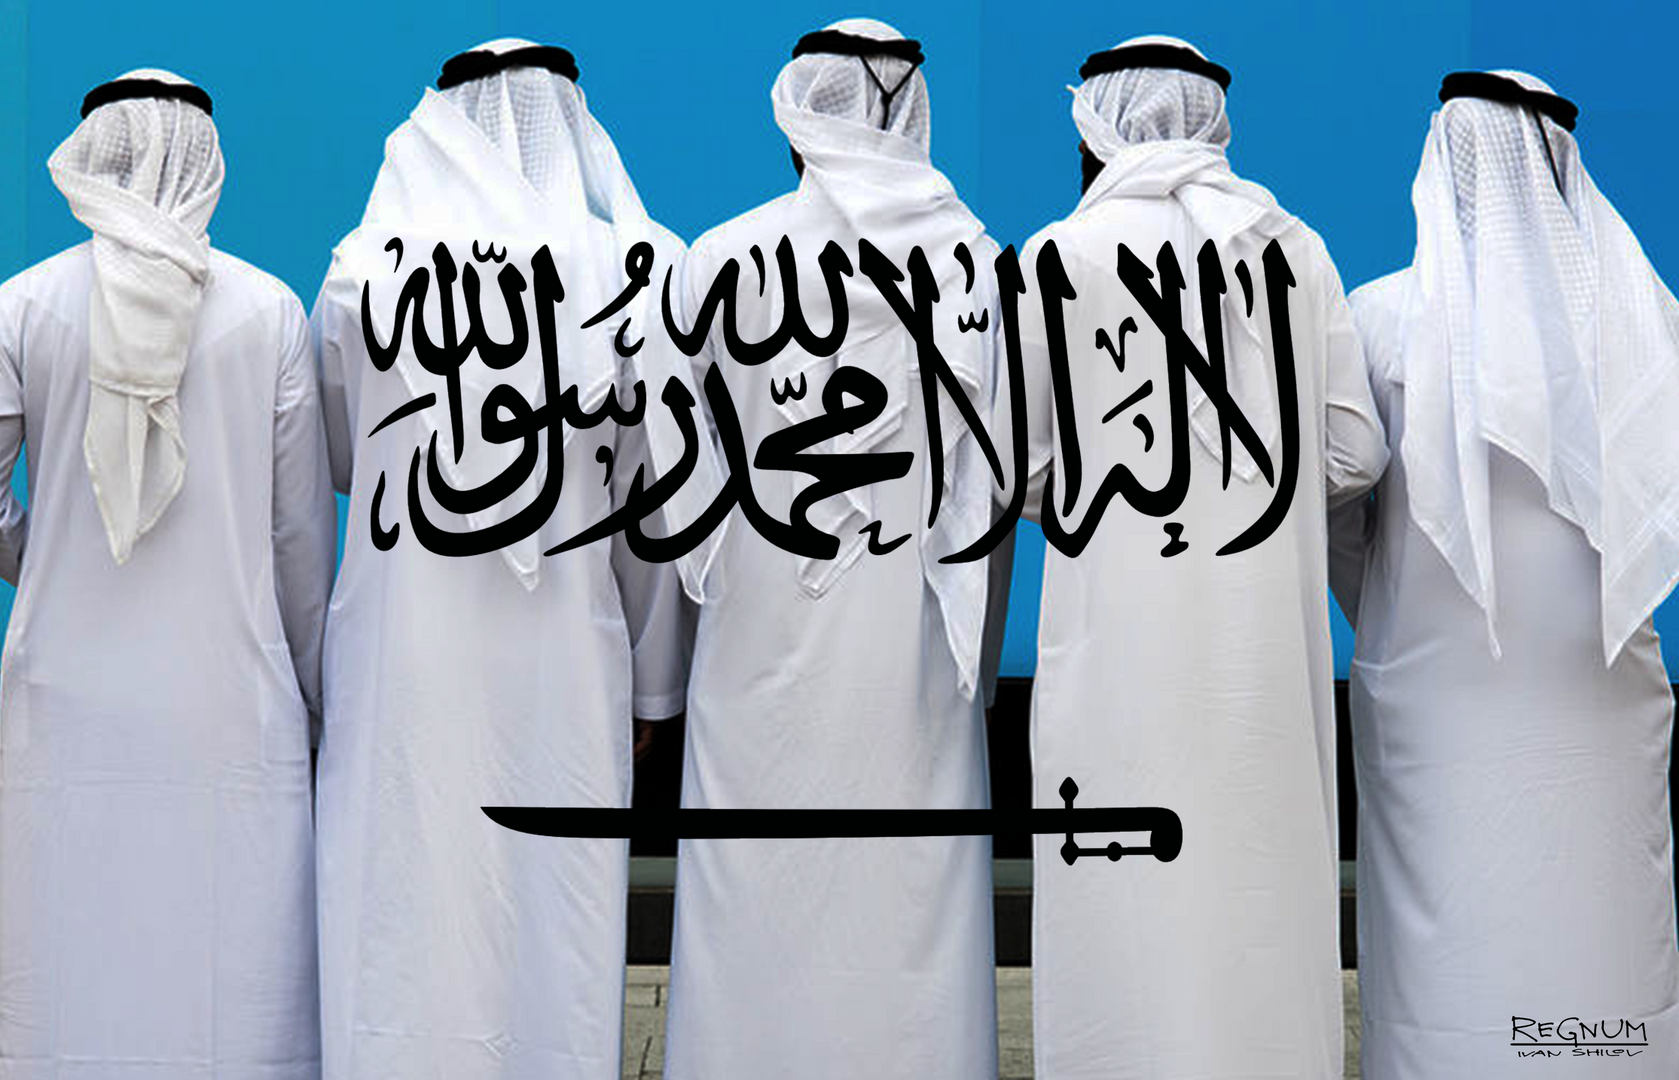 Таслим в исламе. Саудовская Аравия женщины. Исламский экстремизм в Саудовской Аравии. Аравия спонсирует терроризм.